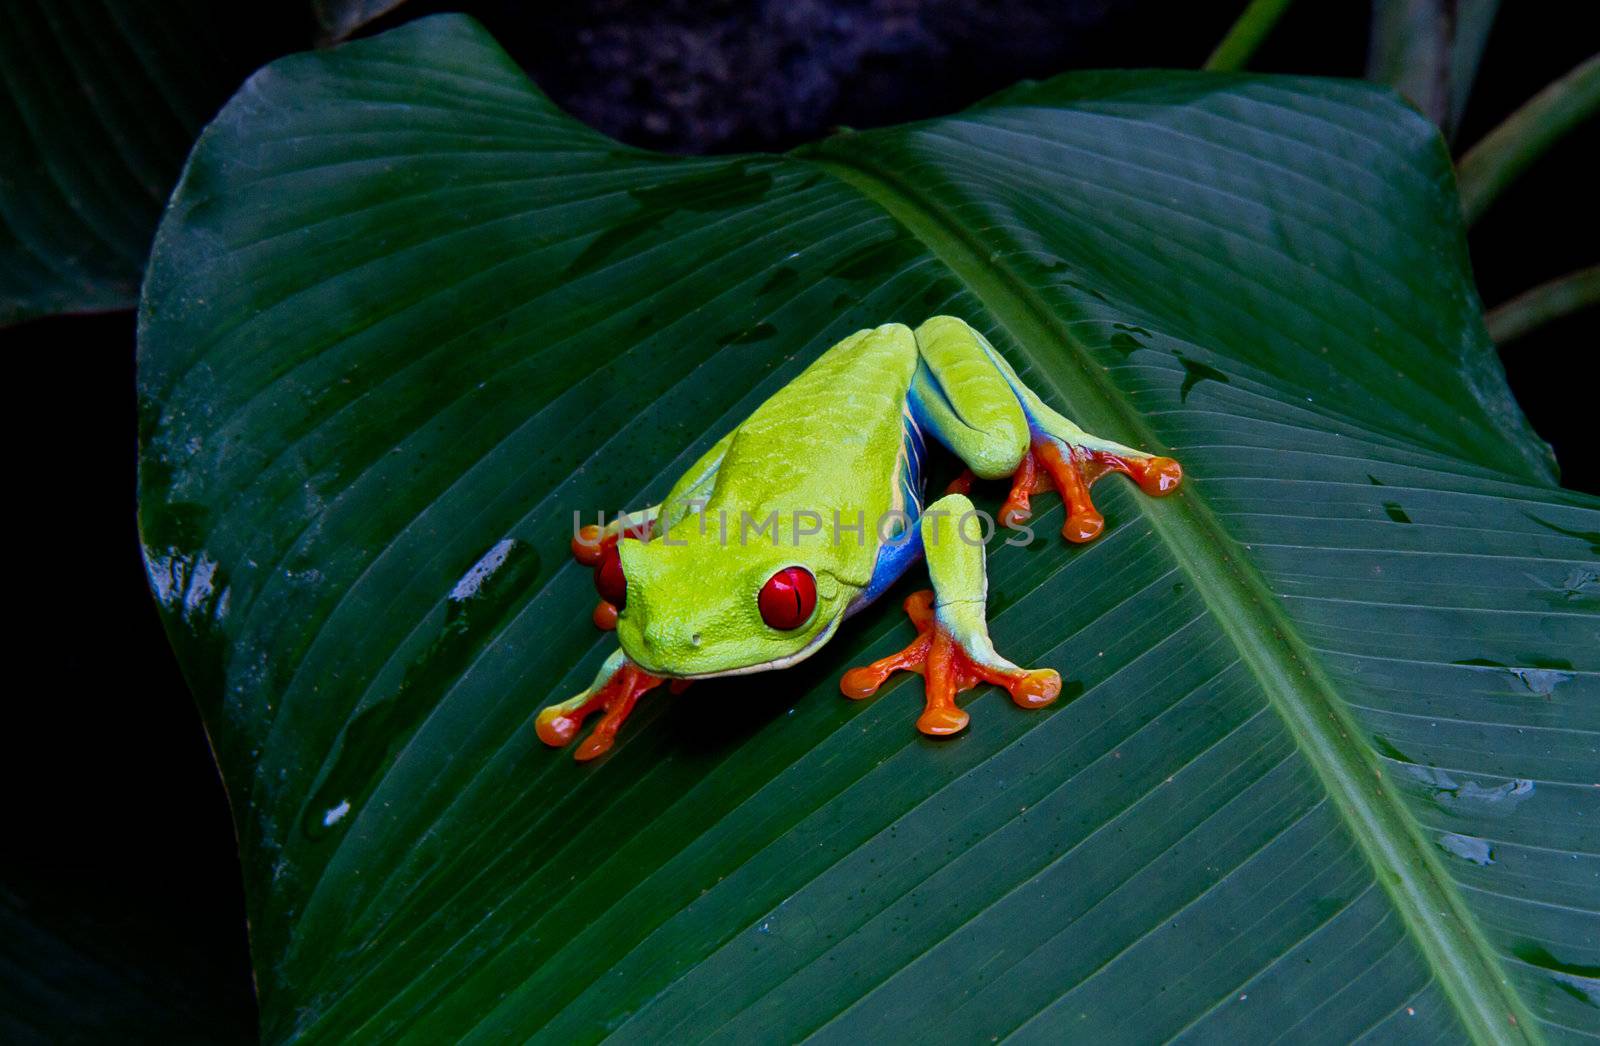 Red eyed tree frog by MojoJojoFoto